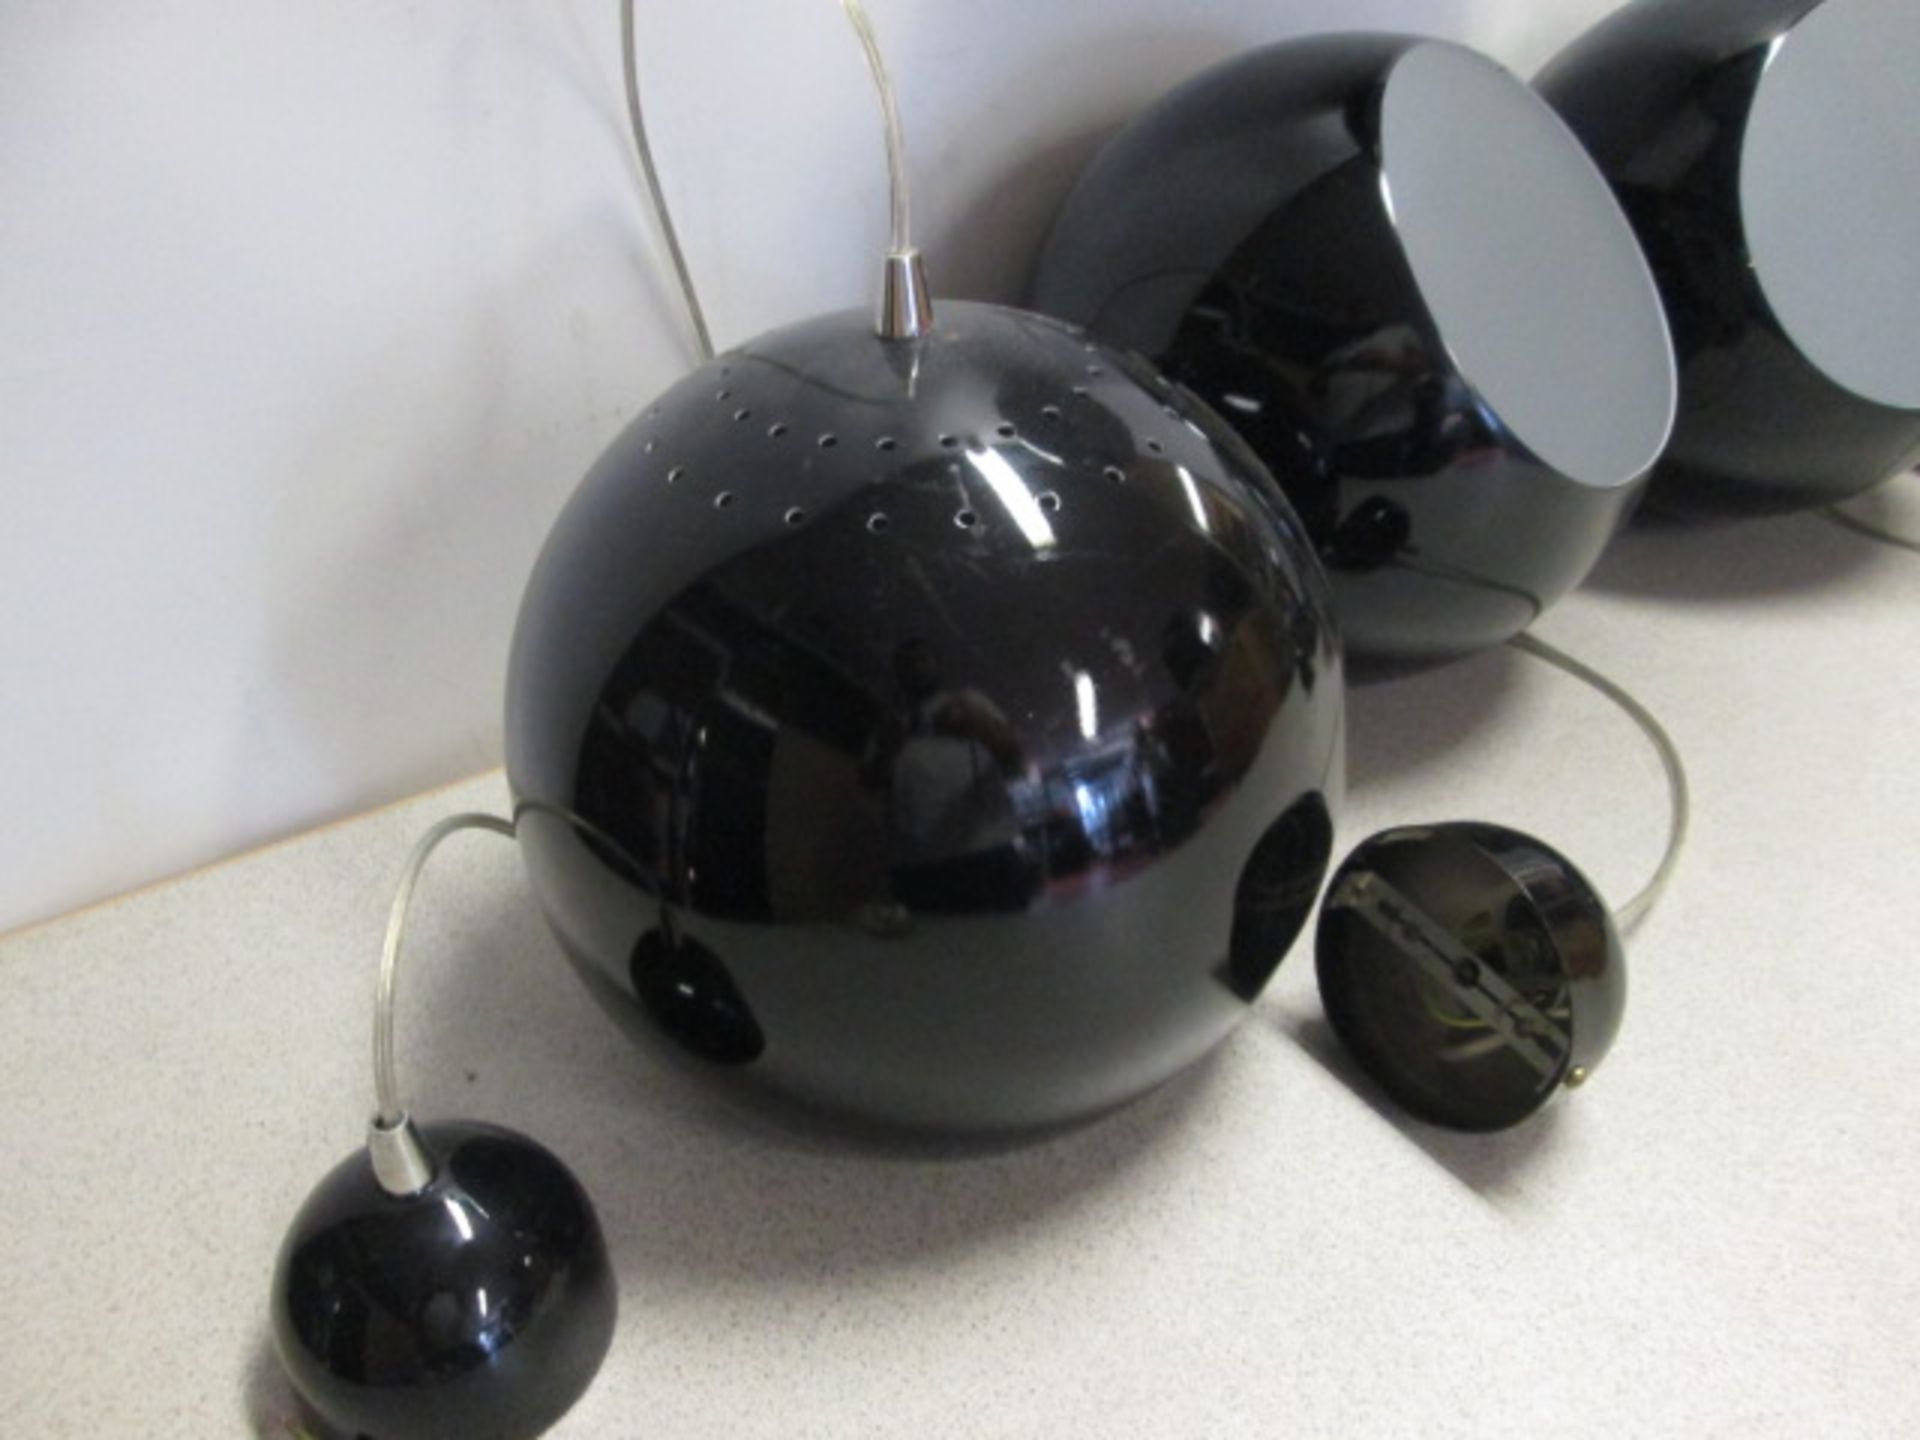 15 x Leitmotive Pendant Lamp Ceiling Lights, Aluminium, Black. Size Diameter 25cm - Image 4 of 5